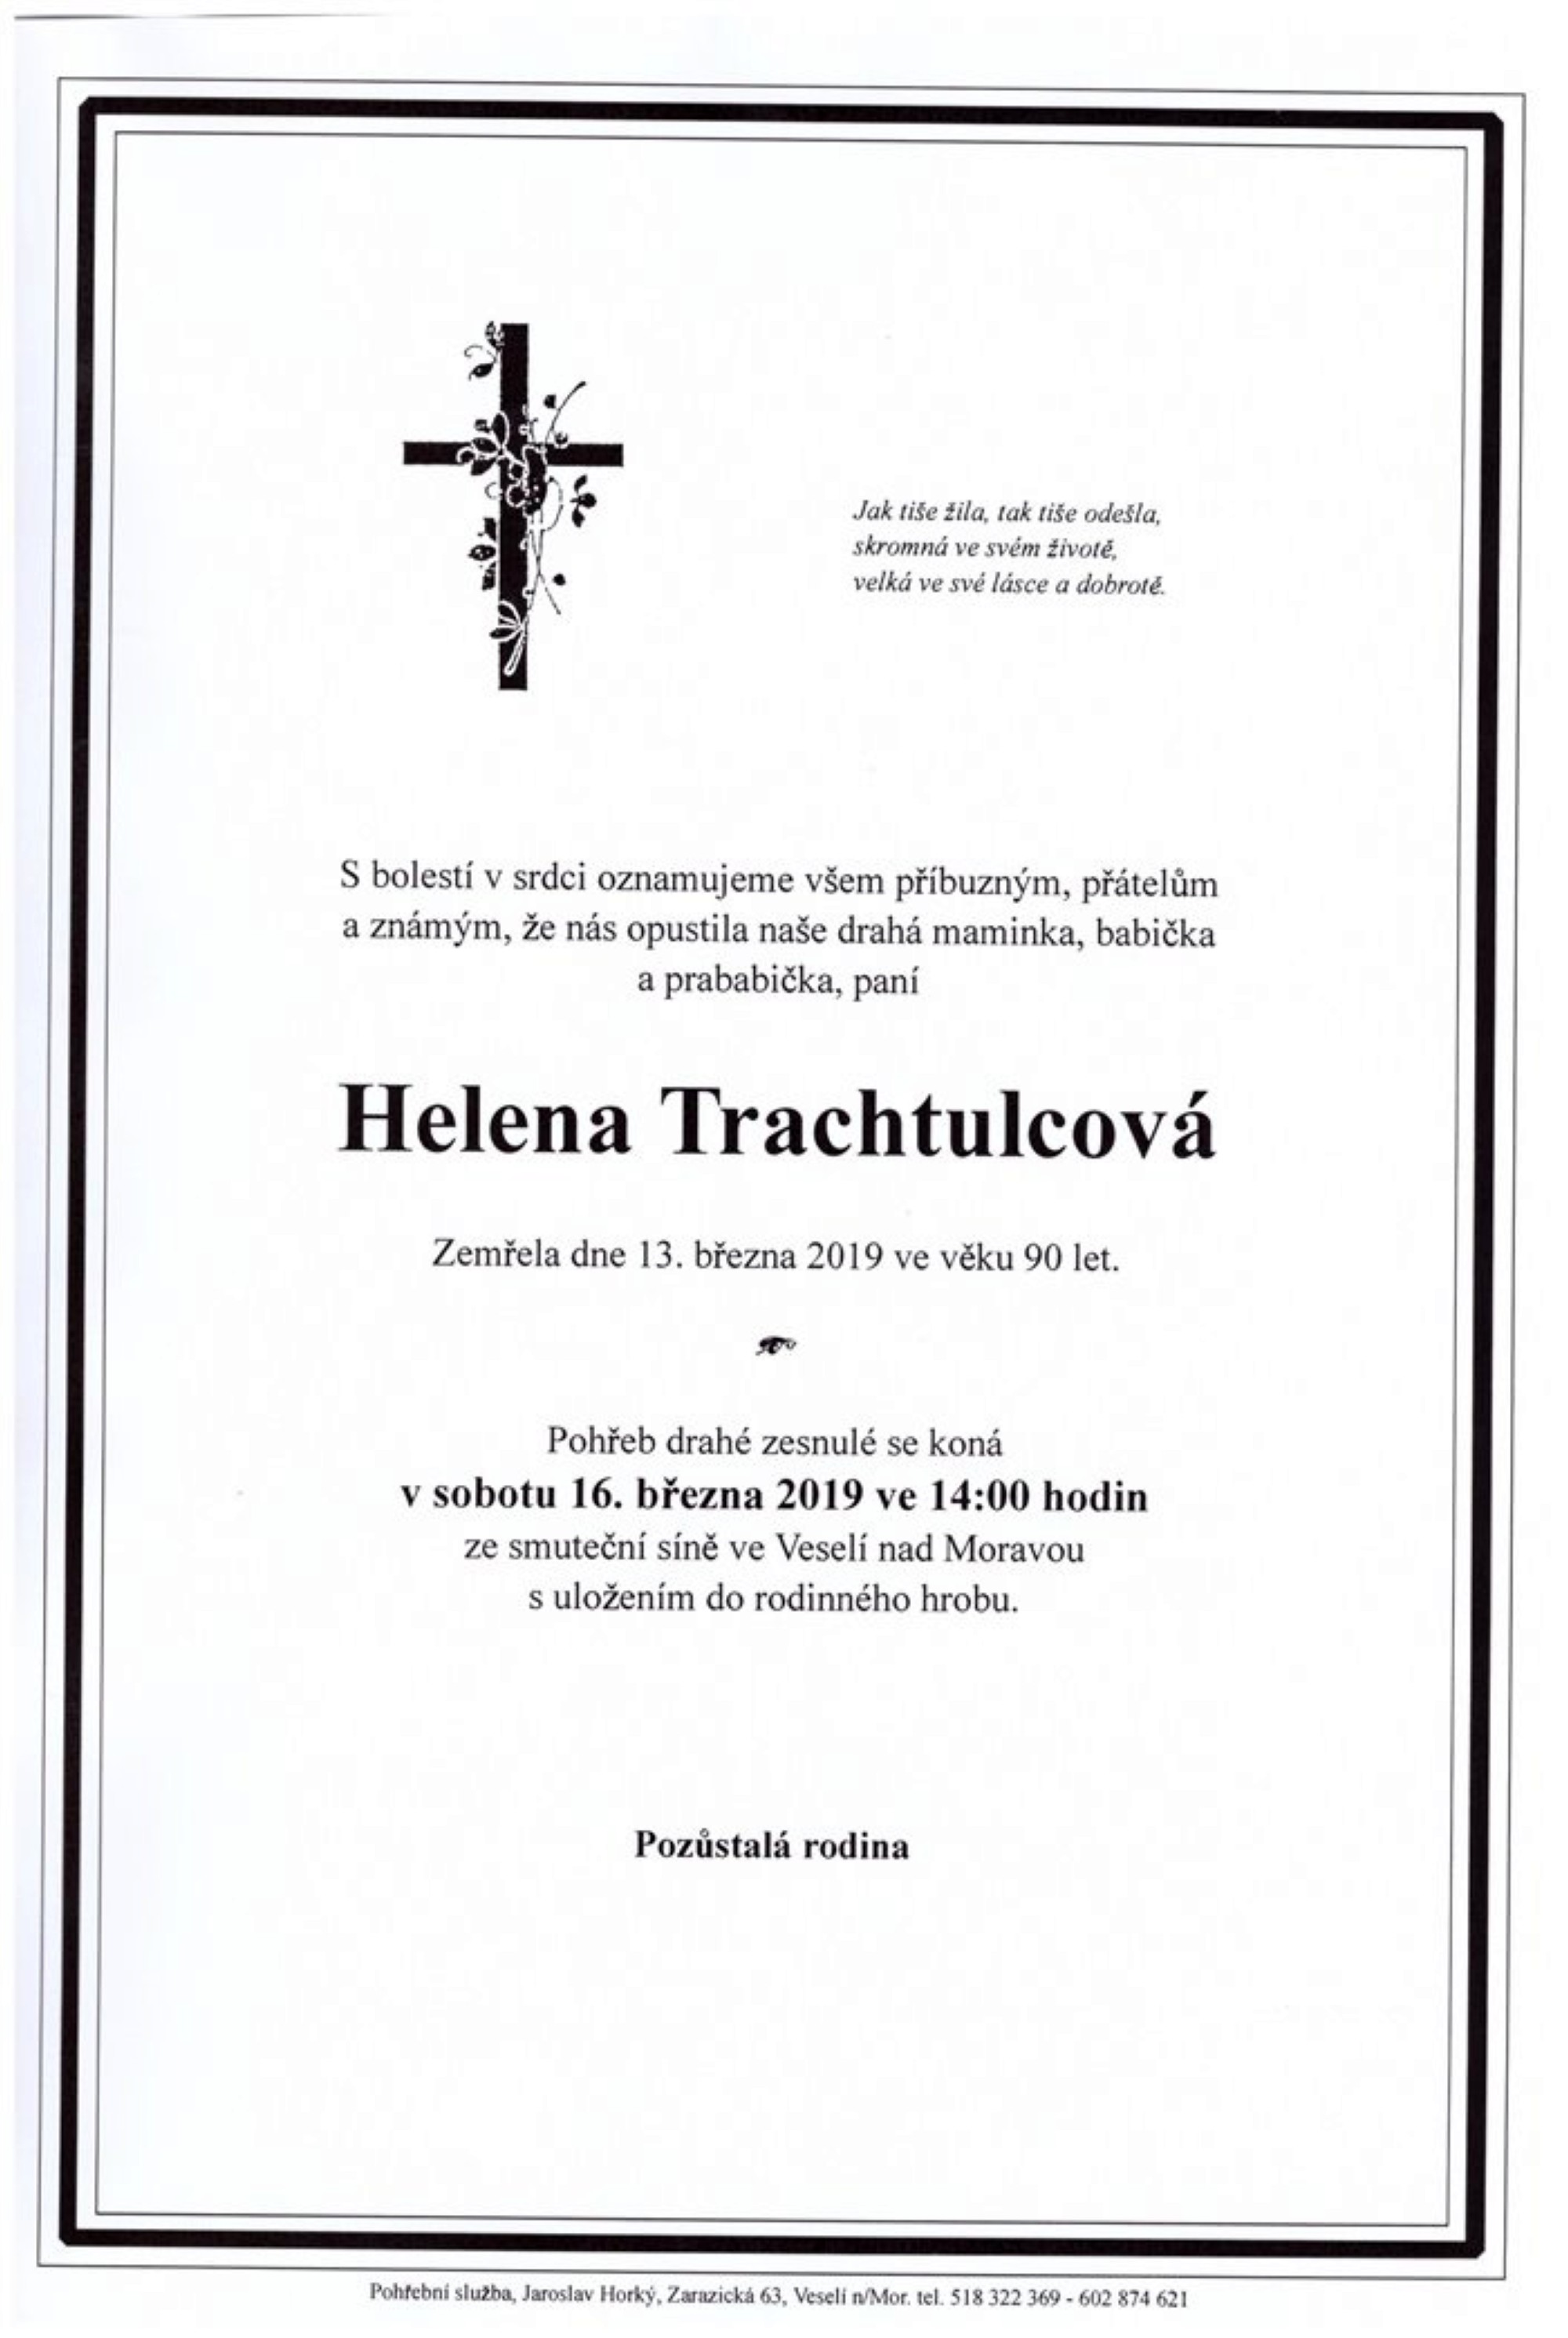 Helena Trachtulcová